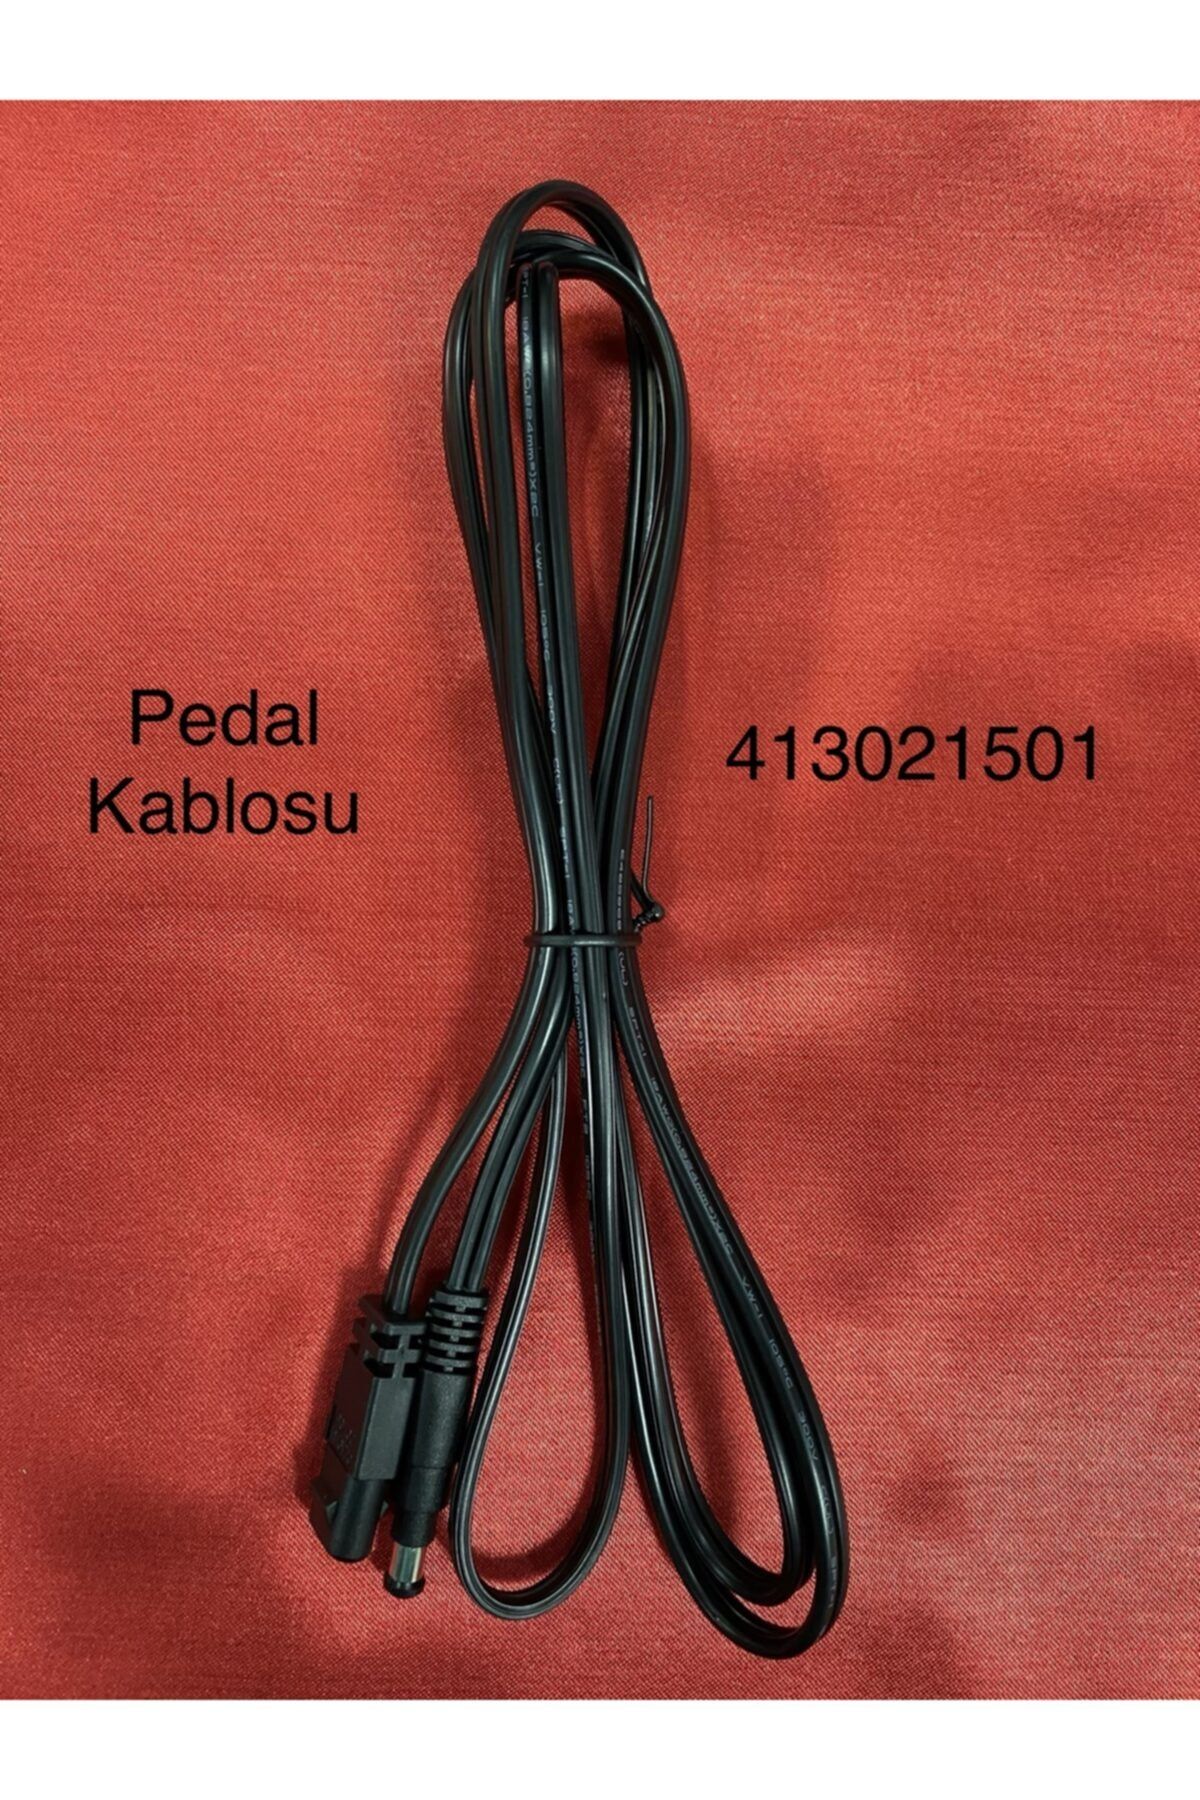 Pfaff Pedal Kablosu -413021501- Uyumlu Modeller Için Açıklama Kısmına Bakınız.